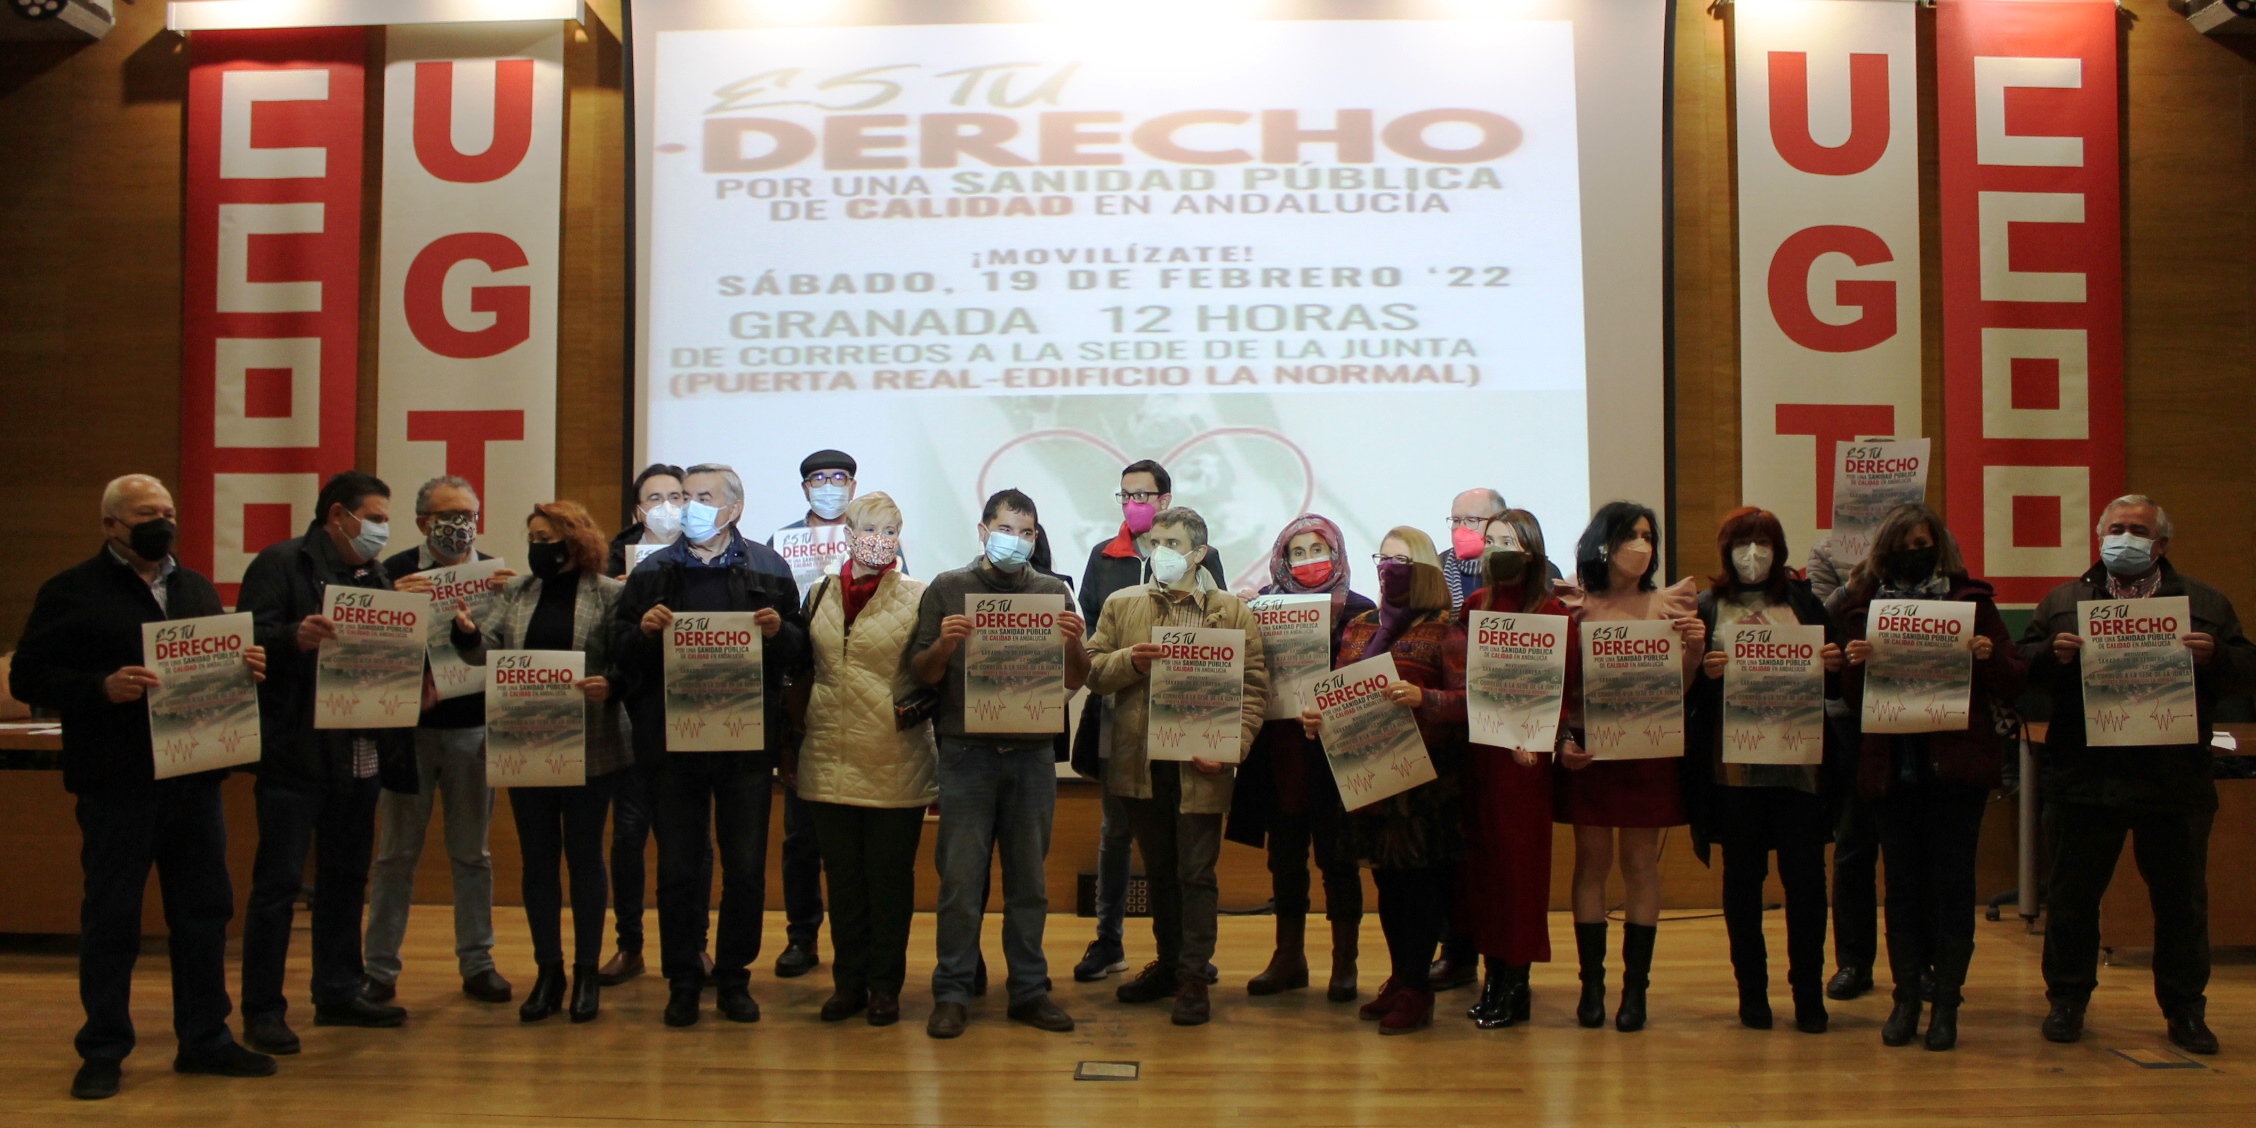 Mas de 40 organizaciones granadinas llaman a manifestarse el 19F en defensa de la sanidad pública